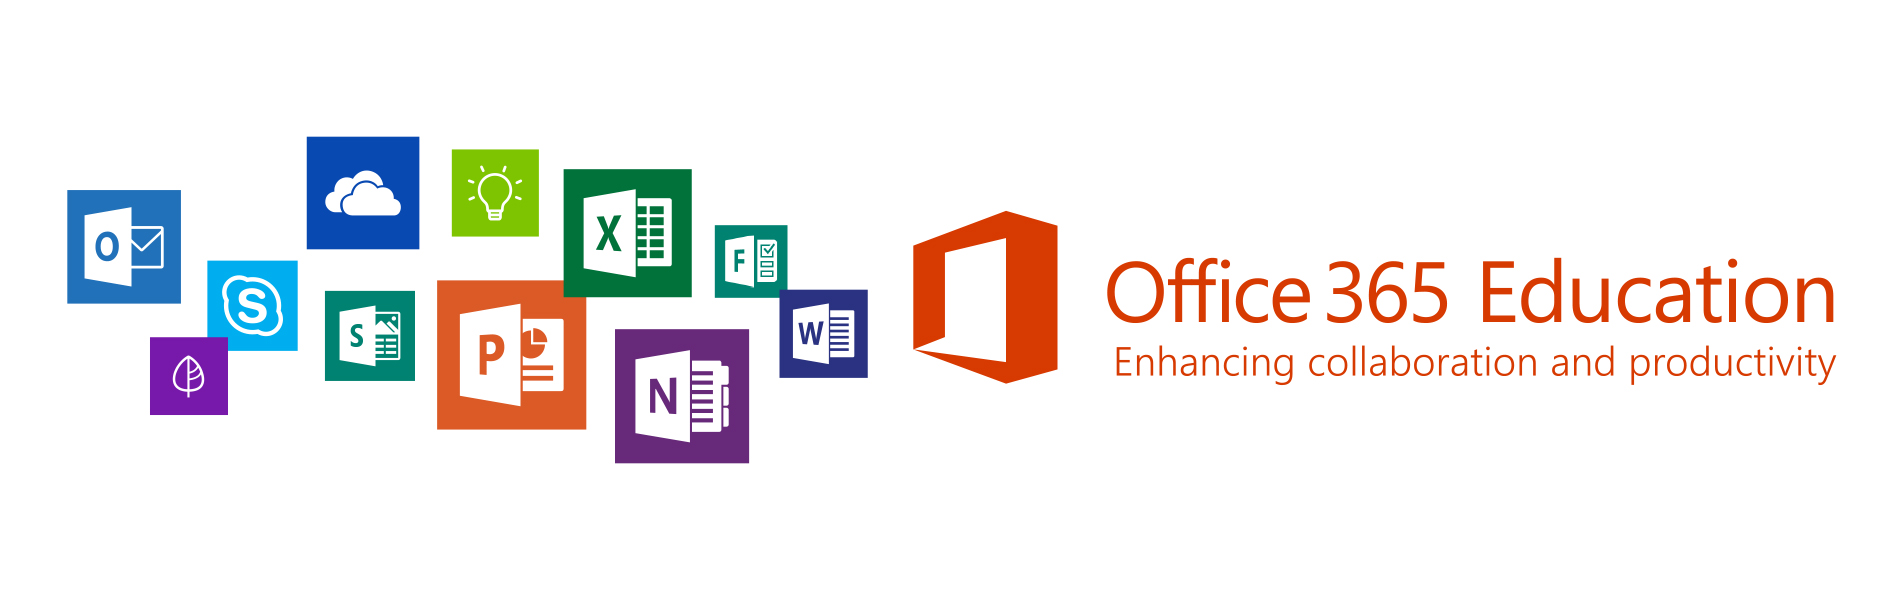 Microsoft se involucra con la enseñanza con Office 365